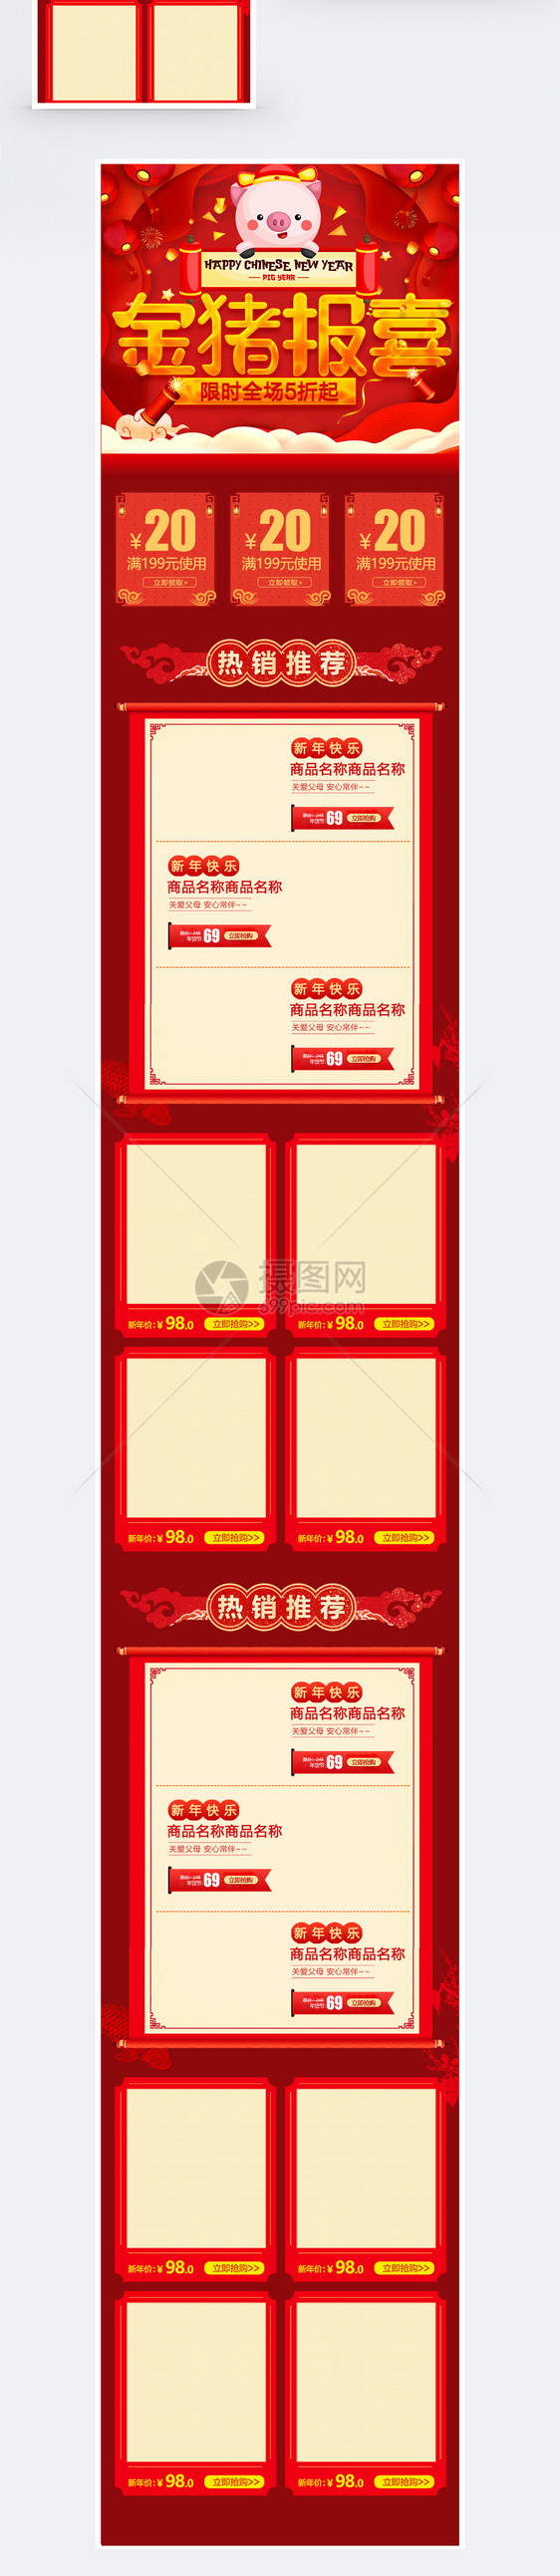 红色金猪报喜促销淘宝手机端模板图片